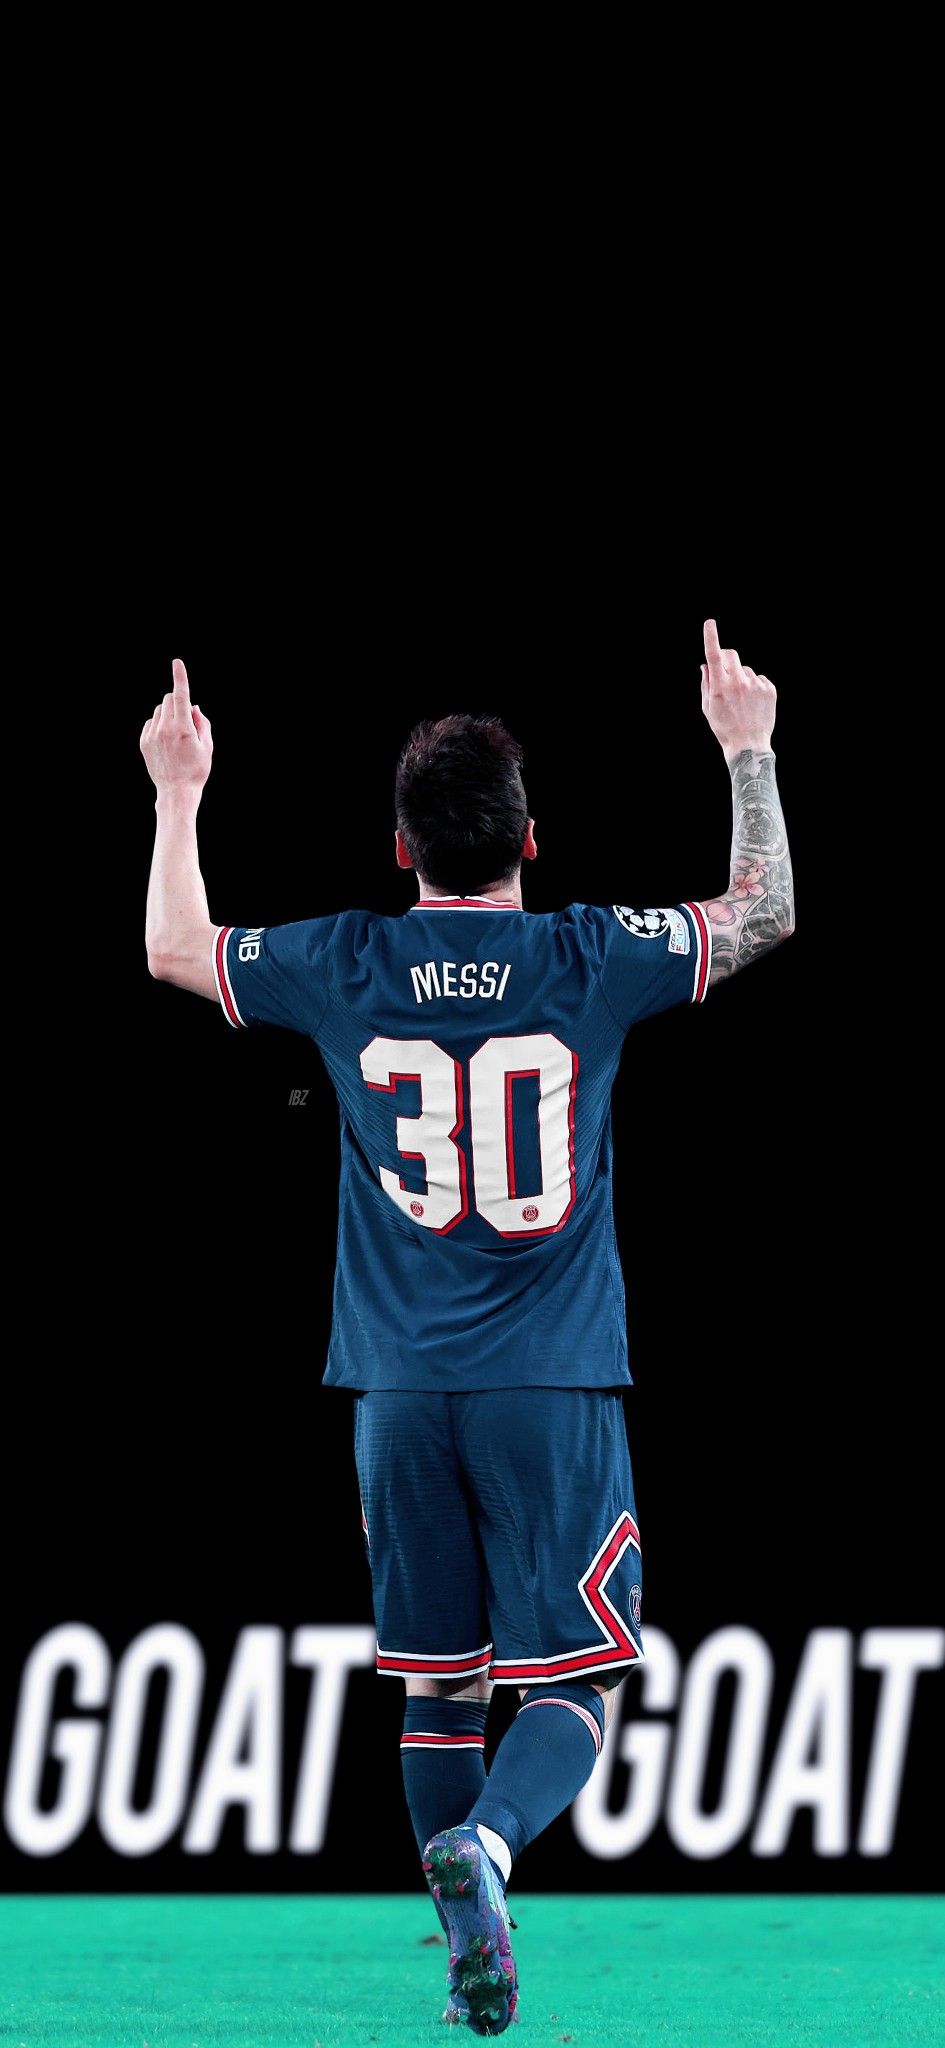 Lionel Messi ideas. lionel messi, messi, leo messi